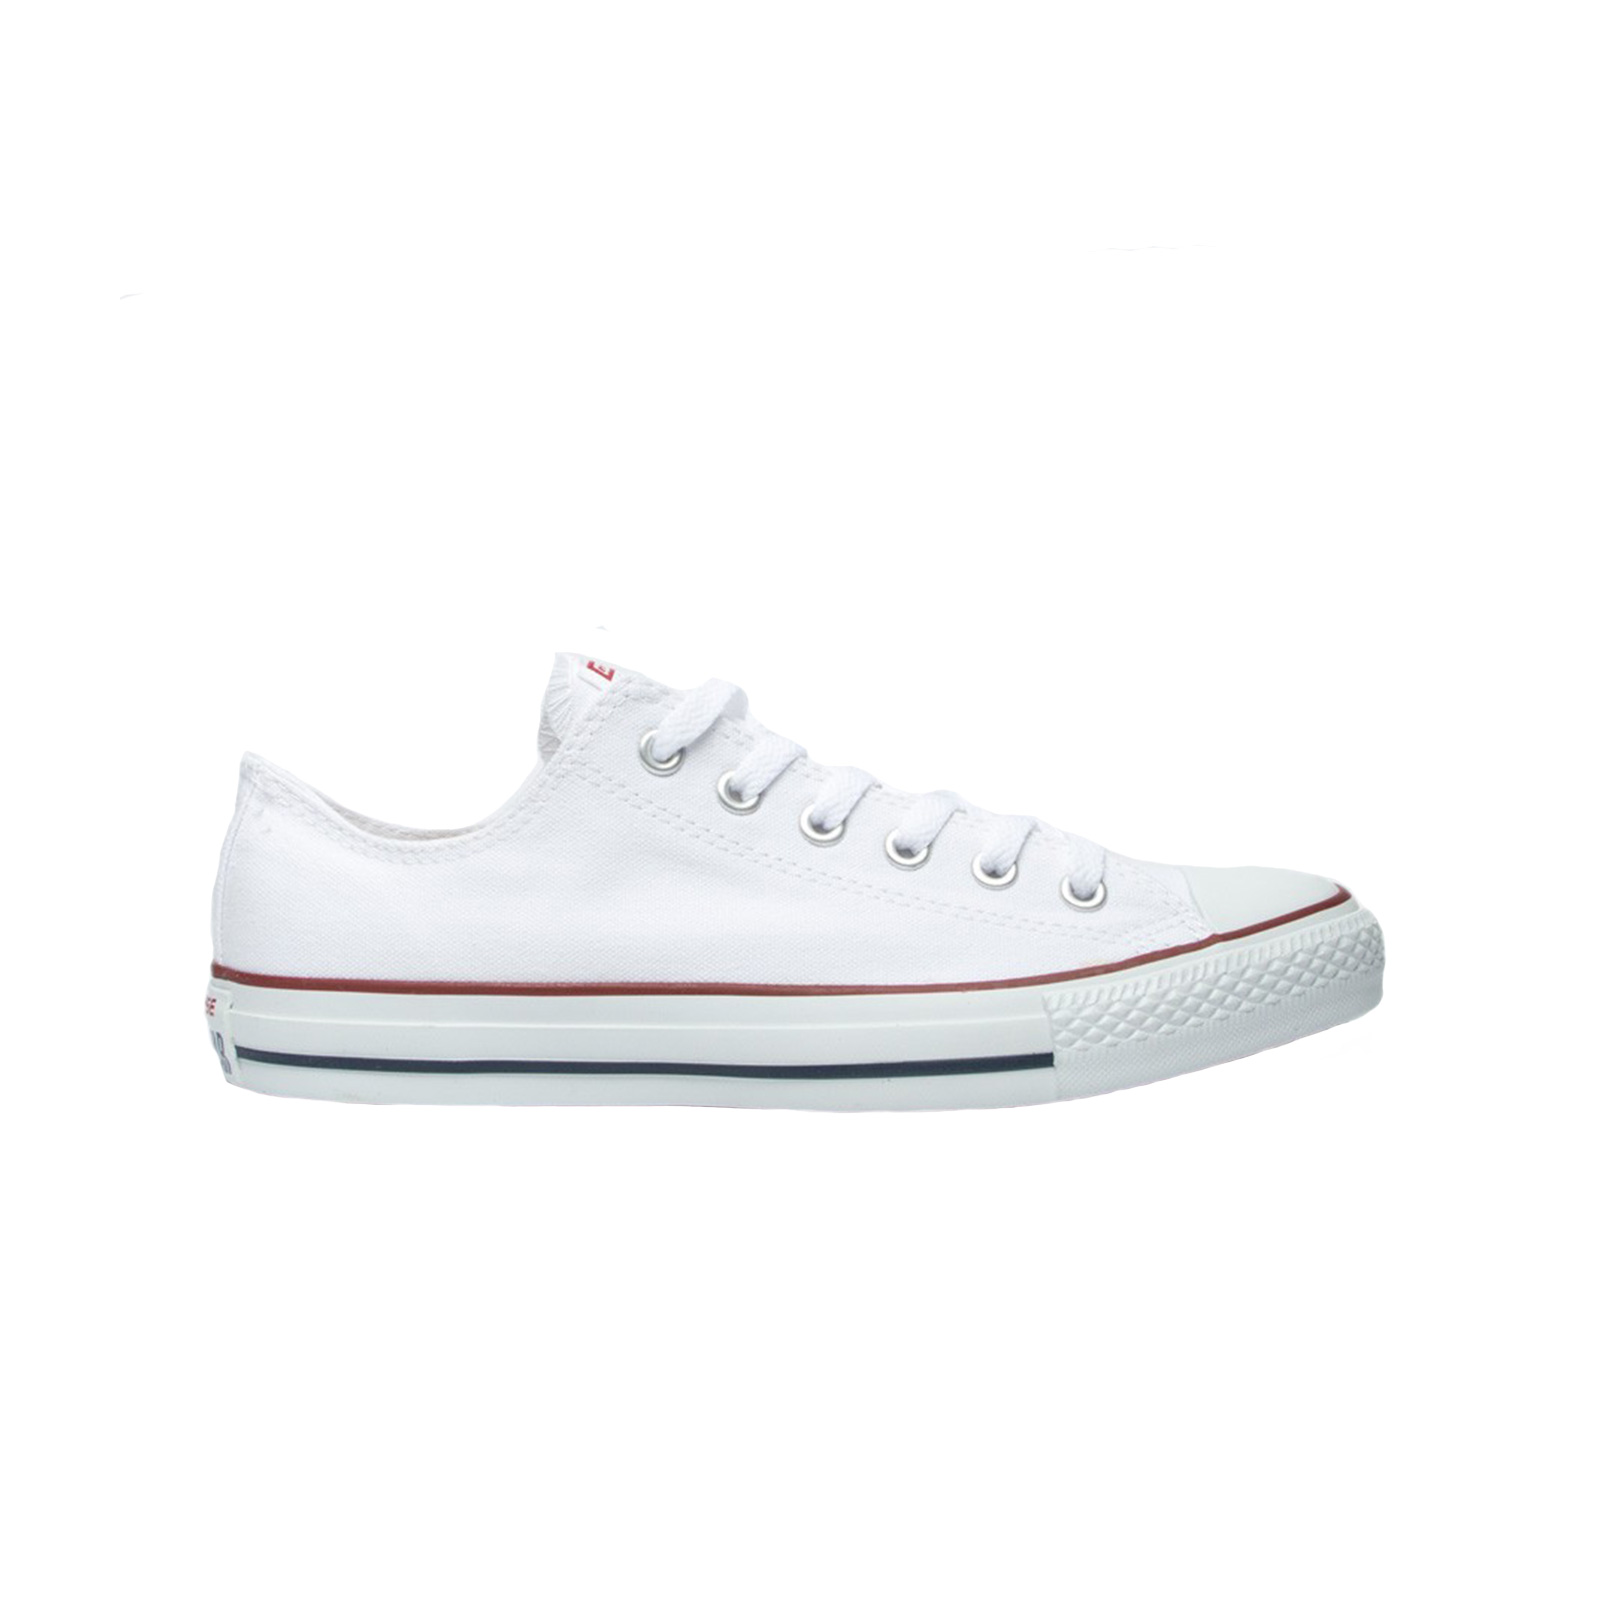 Ανδρικά > Παπούτσια > Sneaker > Παπούτσι Low Cut Converse - CHUCK TAYLOR ALL STAR - 102-OPTICAL WHITE